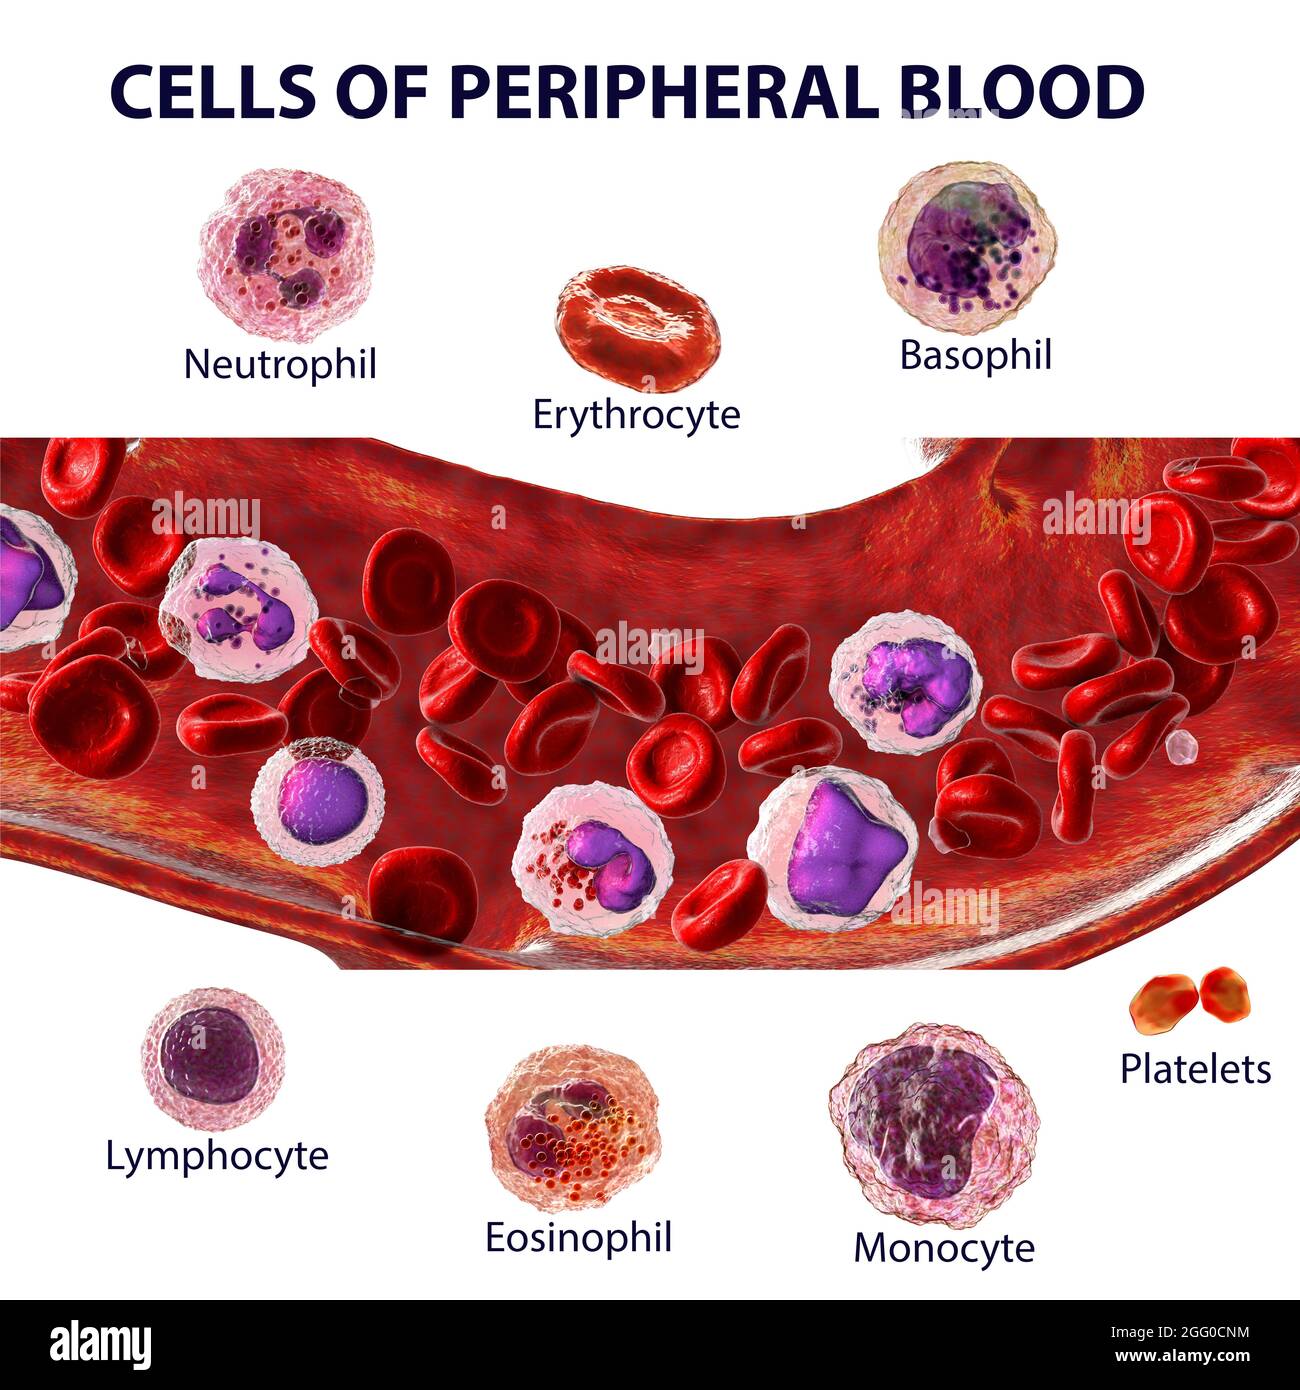 Illustration montrant différents types de cellules sanguines, érythrocytes, neutrophiles, monocytes, basophiles, éosinophiles, lymphocytes et plaquettes. Image étiquetée. Banque D'Images